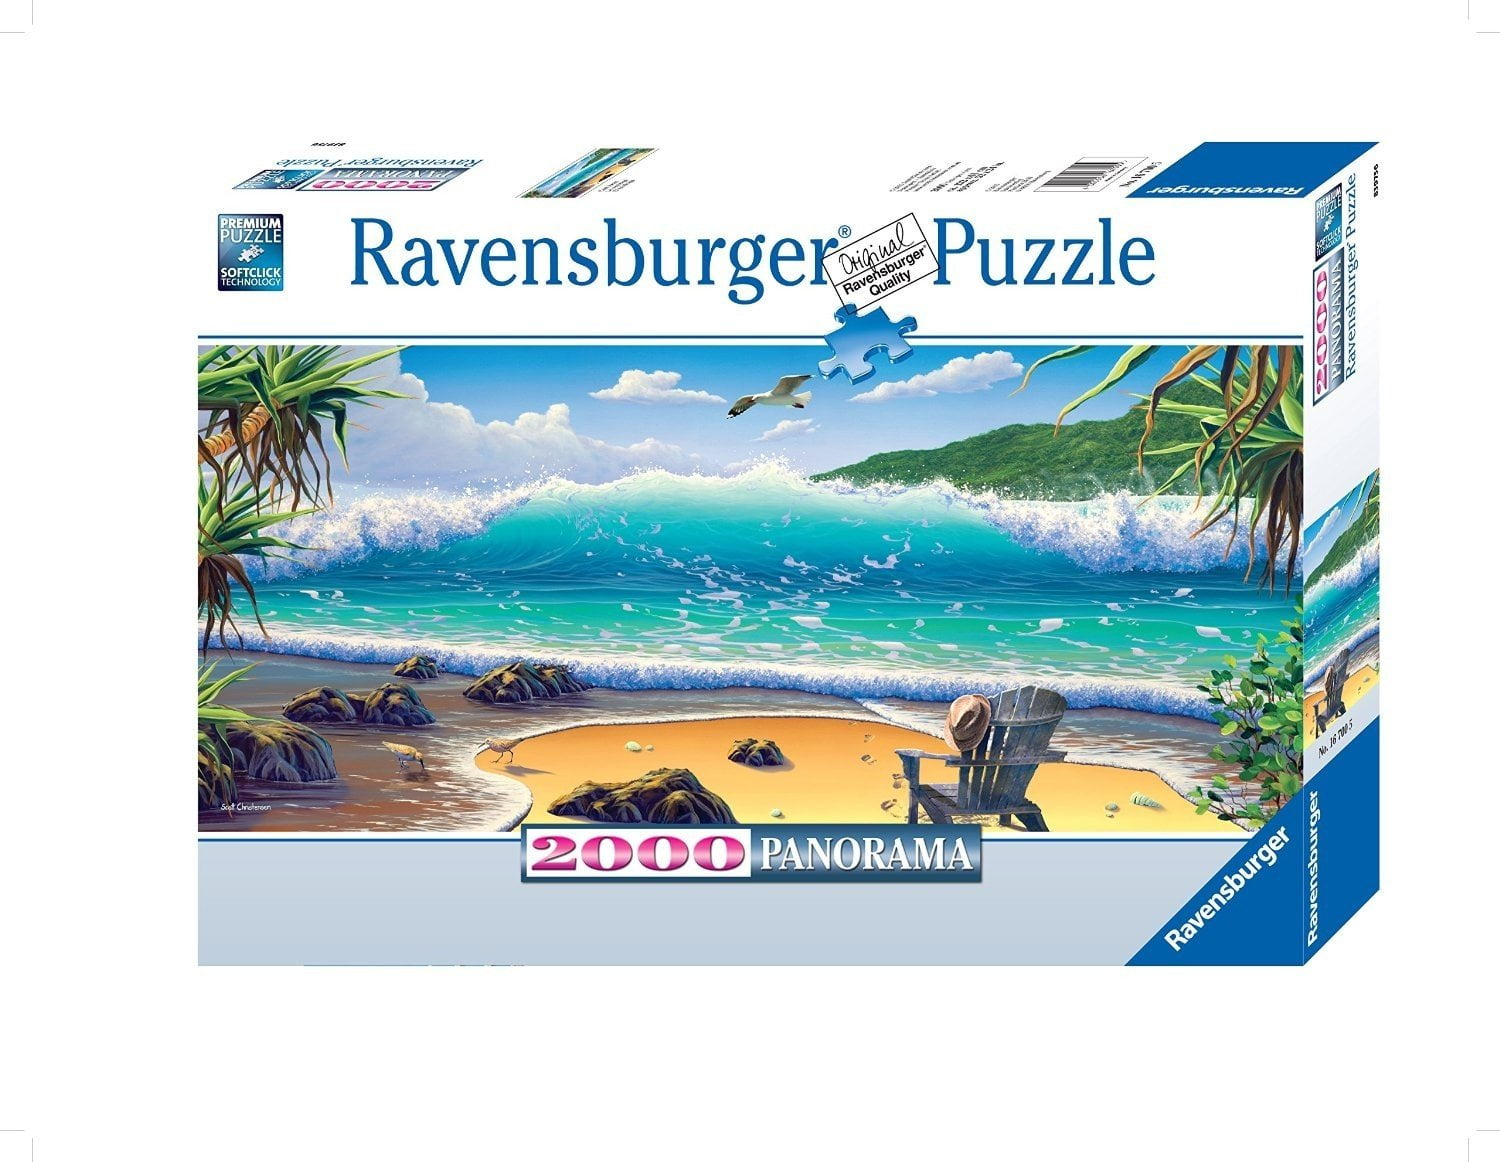 tussen lelijk Trekken Ravensburger Cast Away Panorama Puzzle (2000 Piece) - Walmart.com